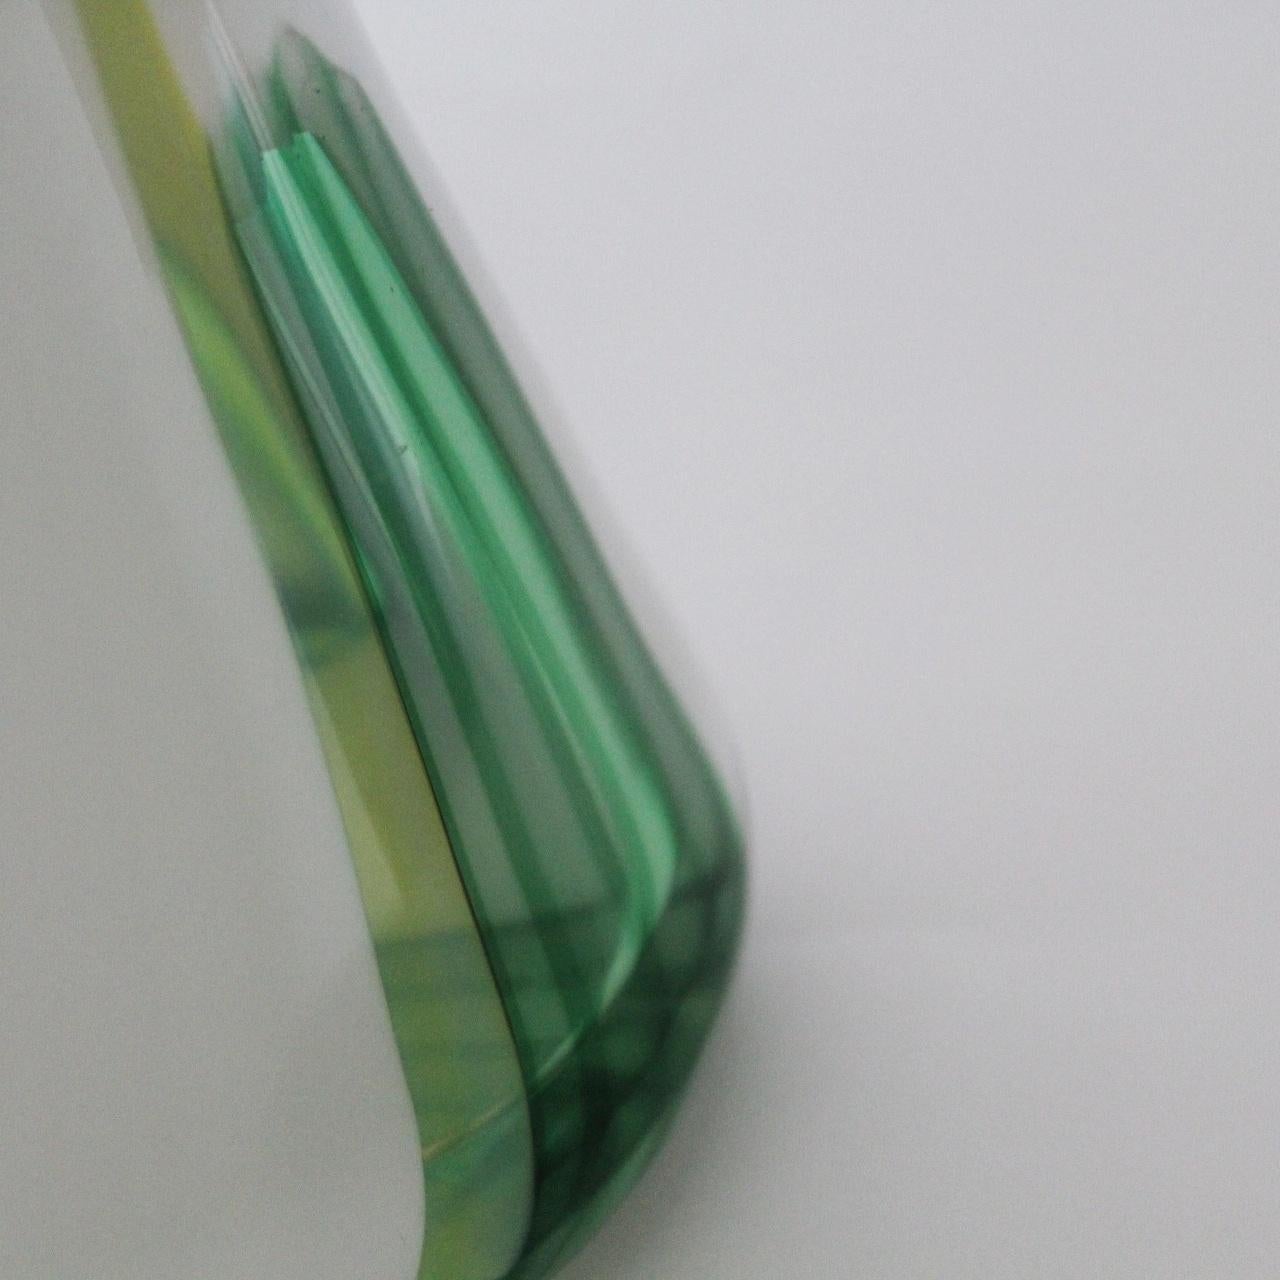 Vase realisiert von Anzolo Fuga für AVEM.
Lattimo und polychrome Glasrohre. 
Literatur: 
